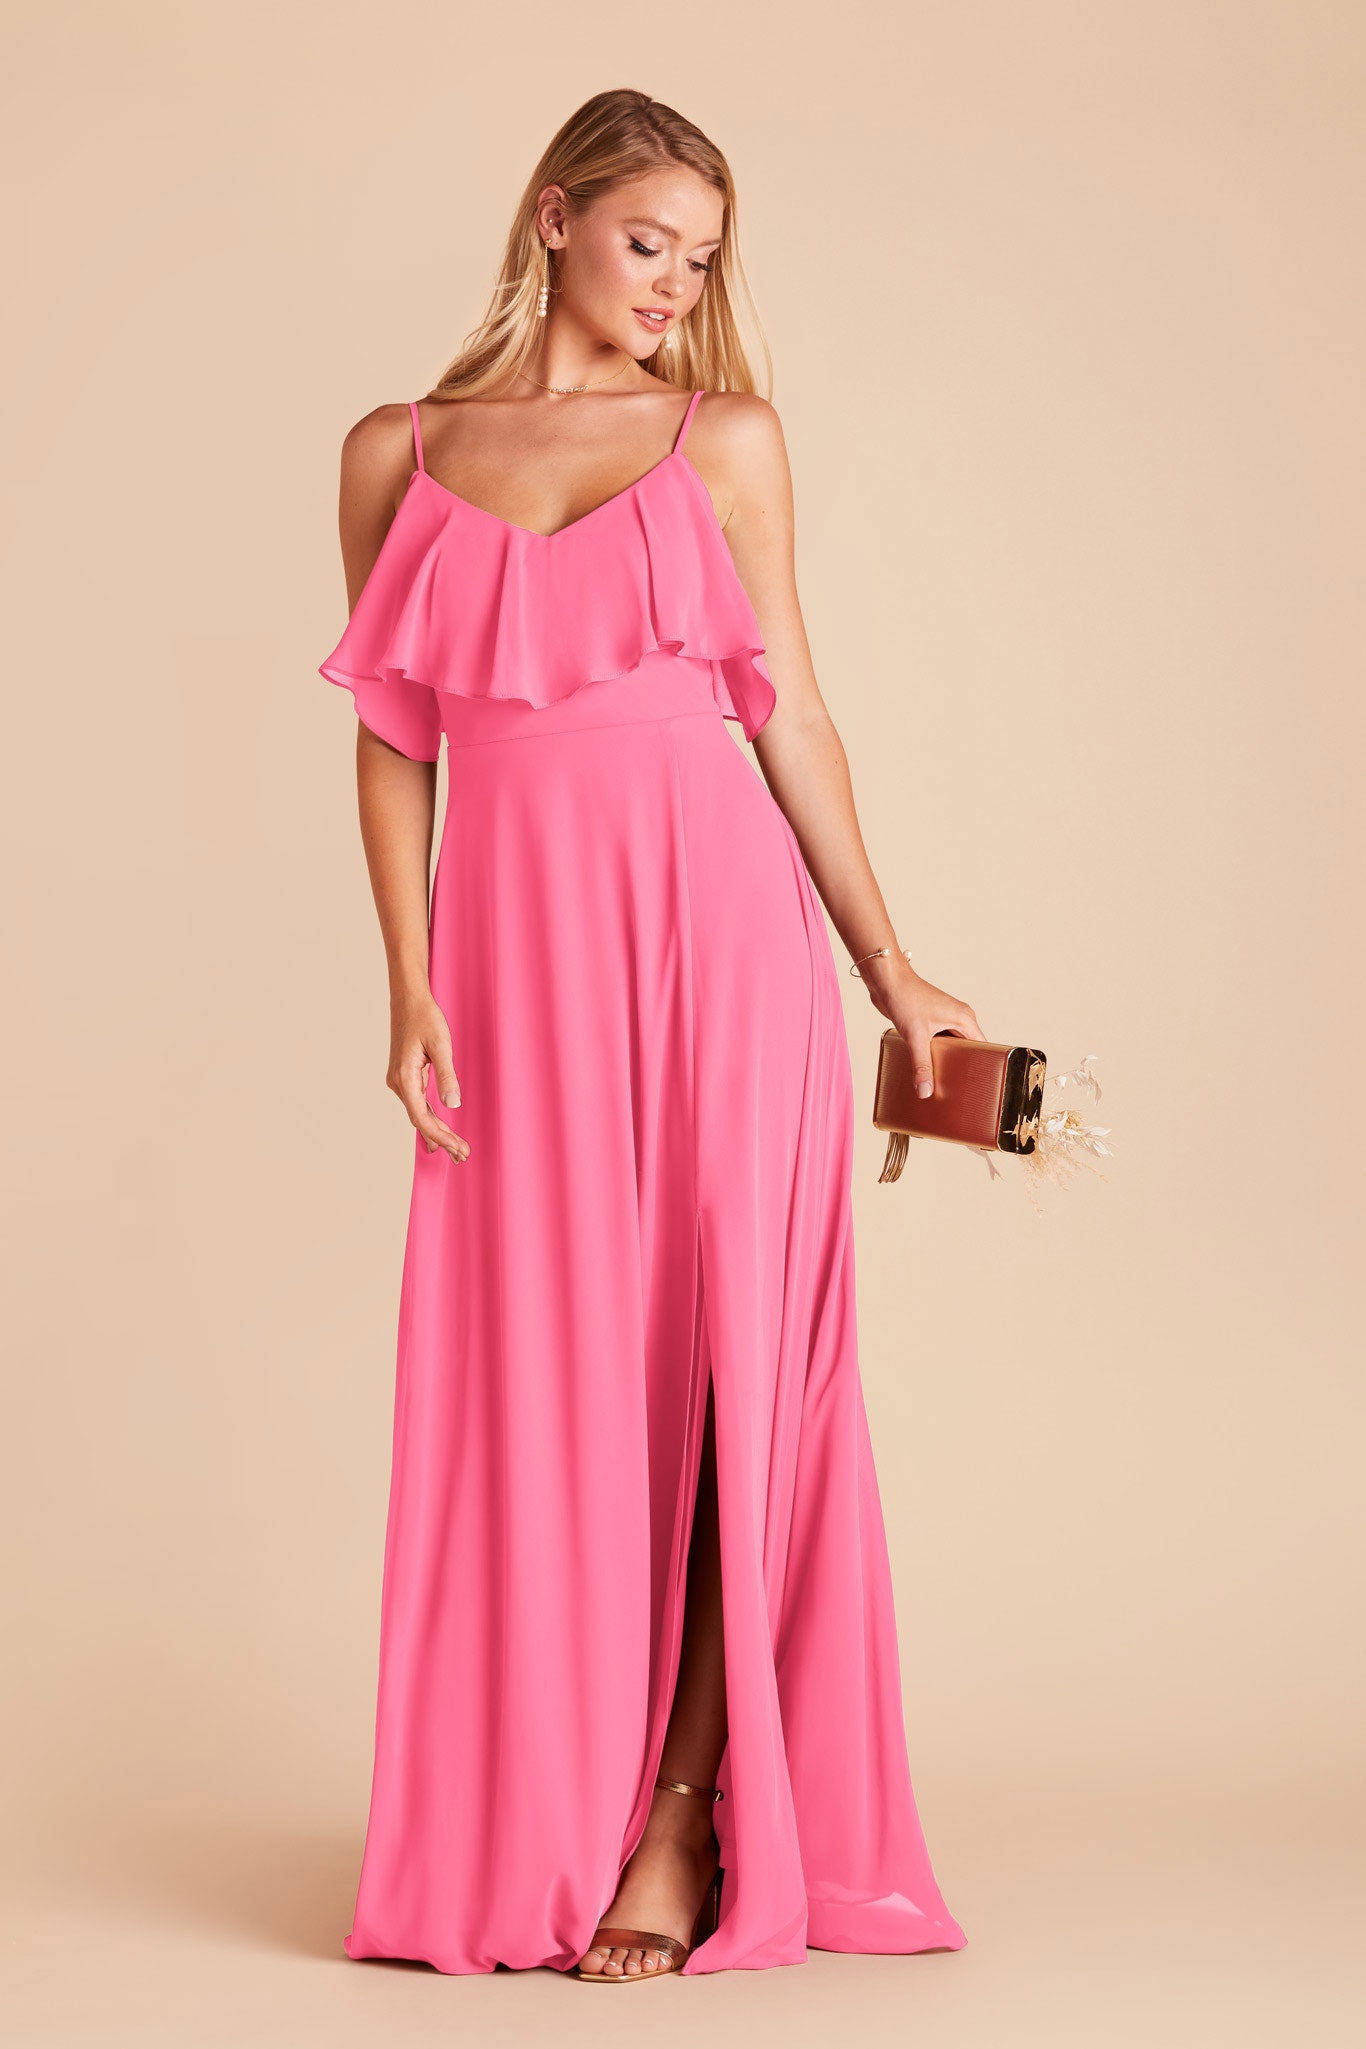 Bon Bon Pink Jane Convertible Dress by Birdy Grey